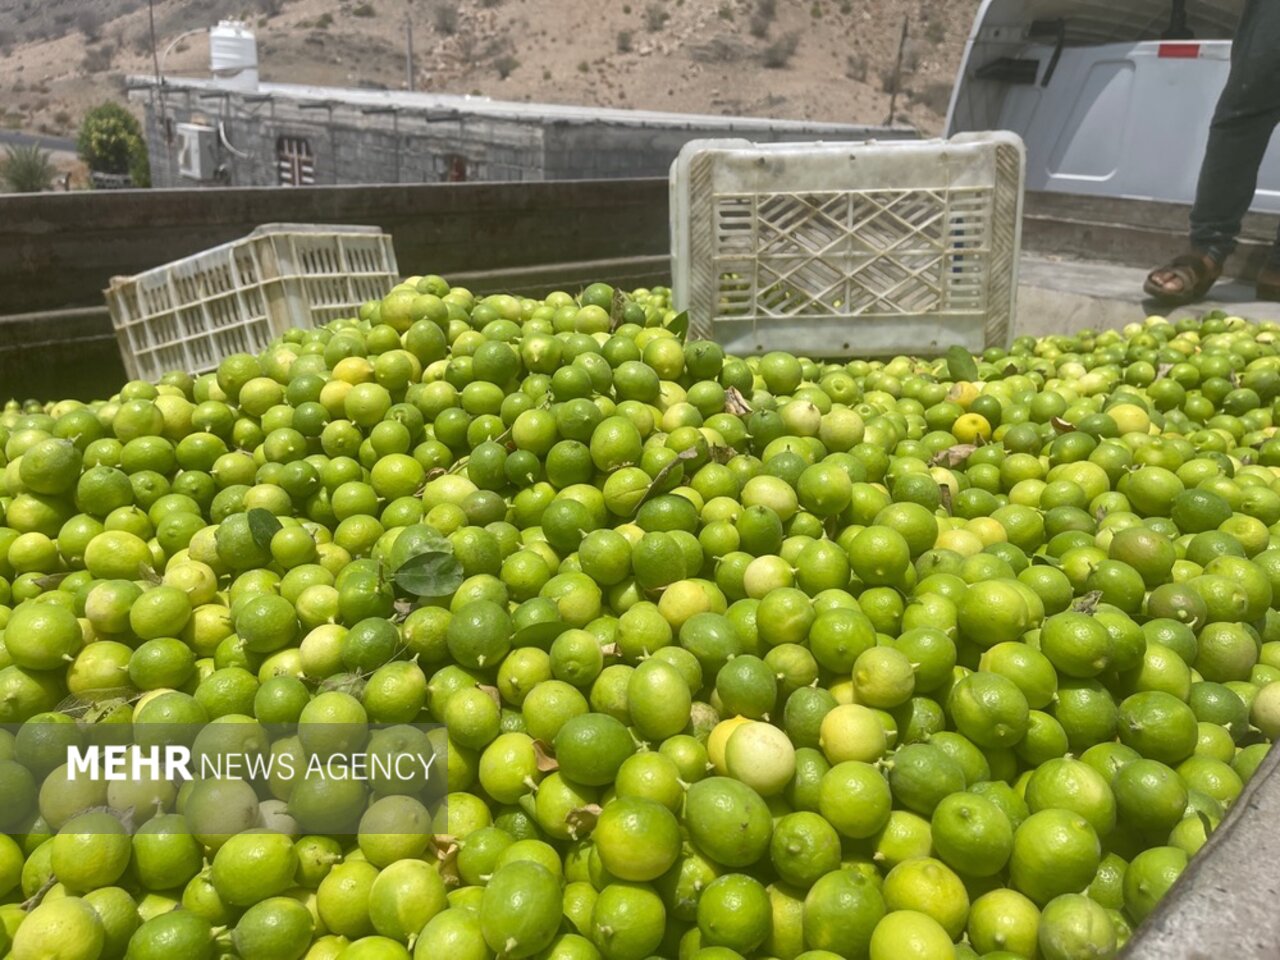 راه اندازی مرکز لیمو خشک کنی در شهرستان حاجی آباد